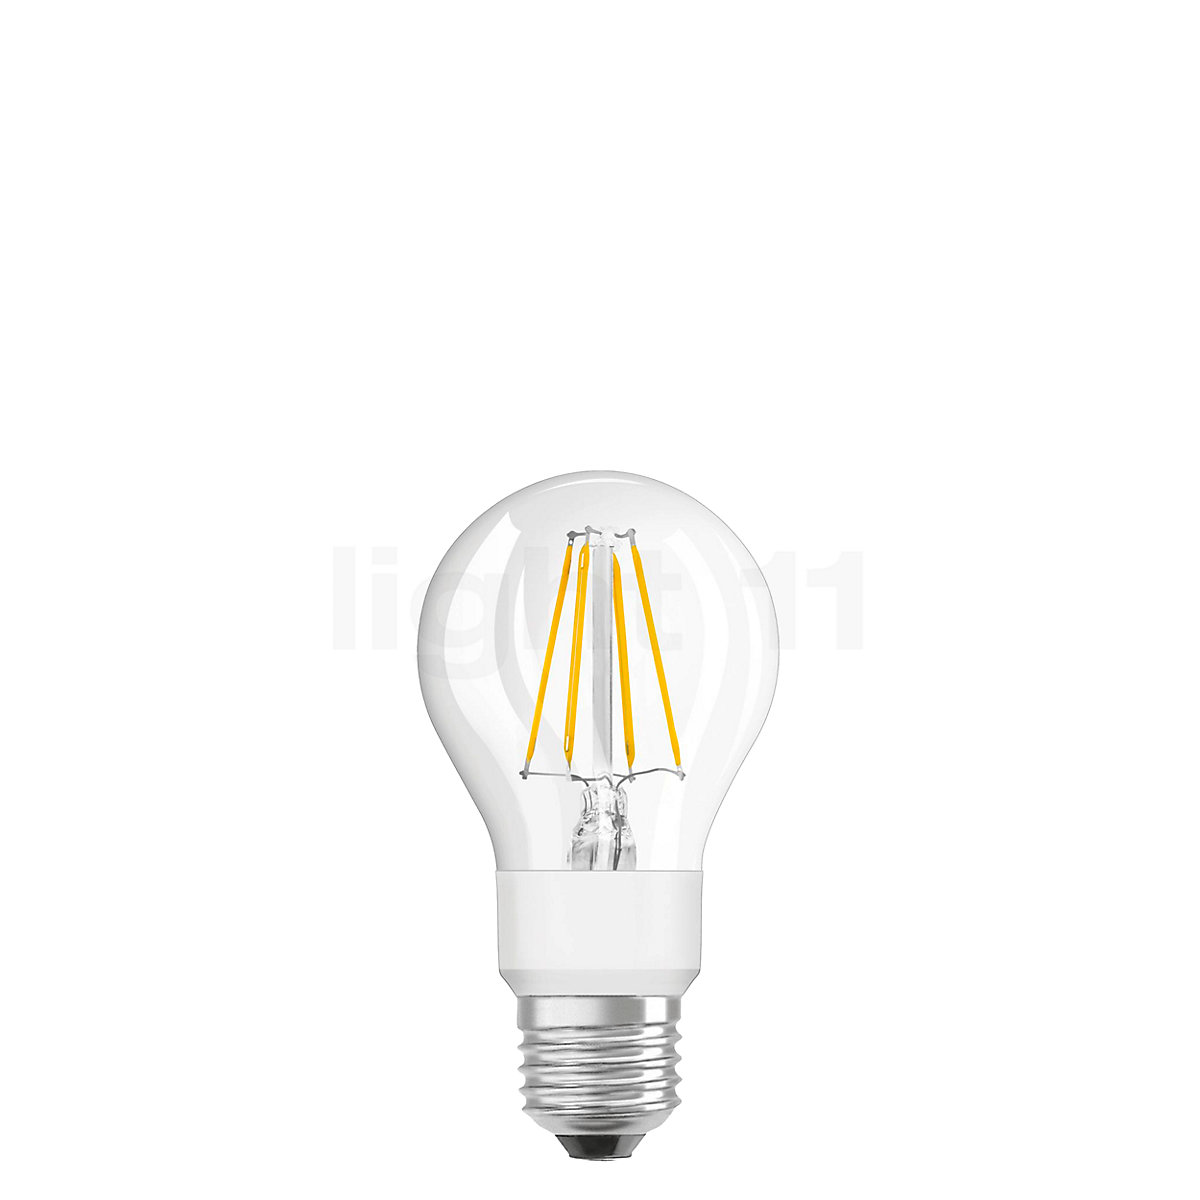 NieuwZeeland Consumeren Gorgelen Buy Osram A60-dim 7W/c 827, E27 Filament LED dim2warm at